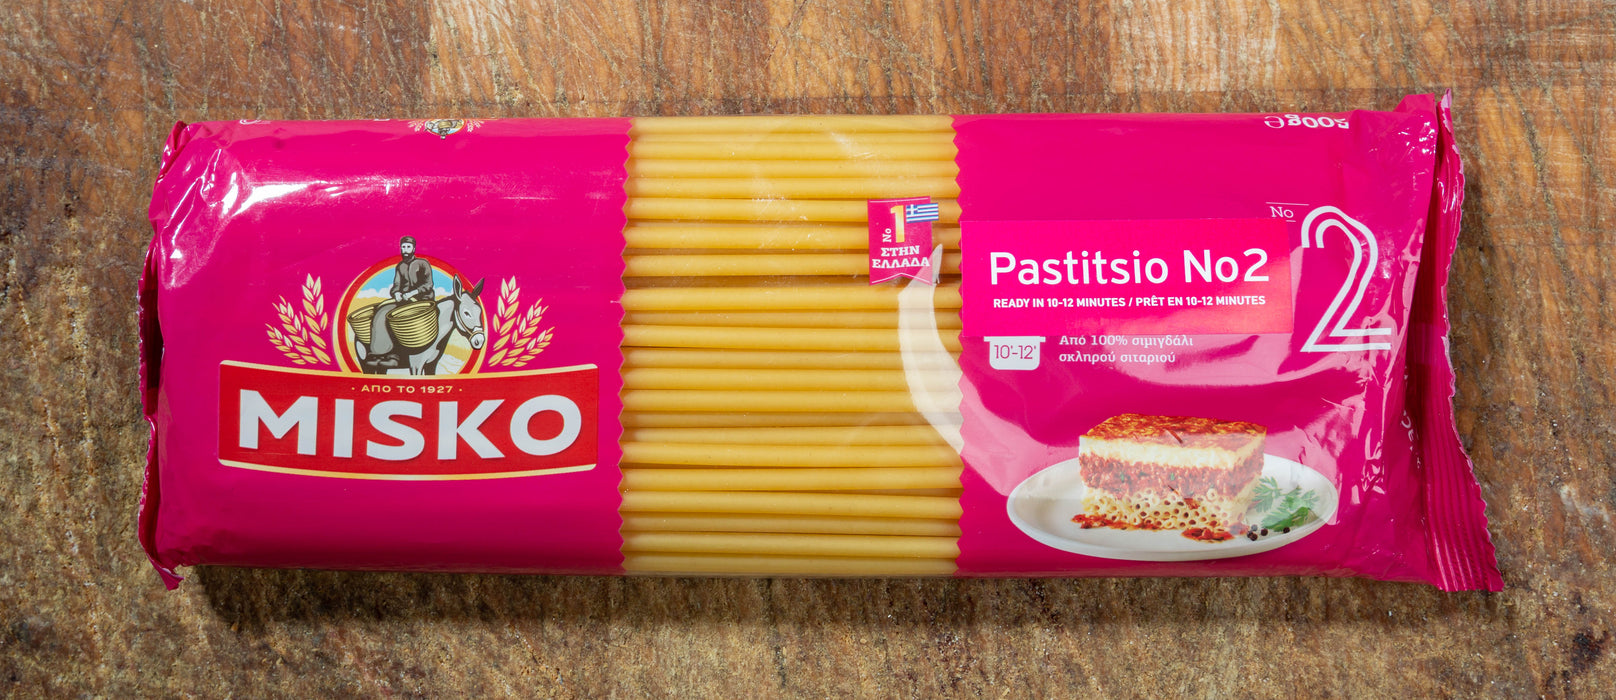 Misko Spaghetti no2